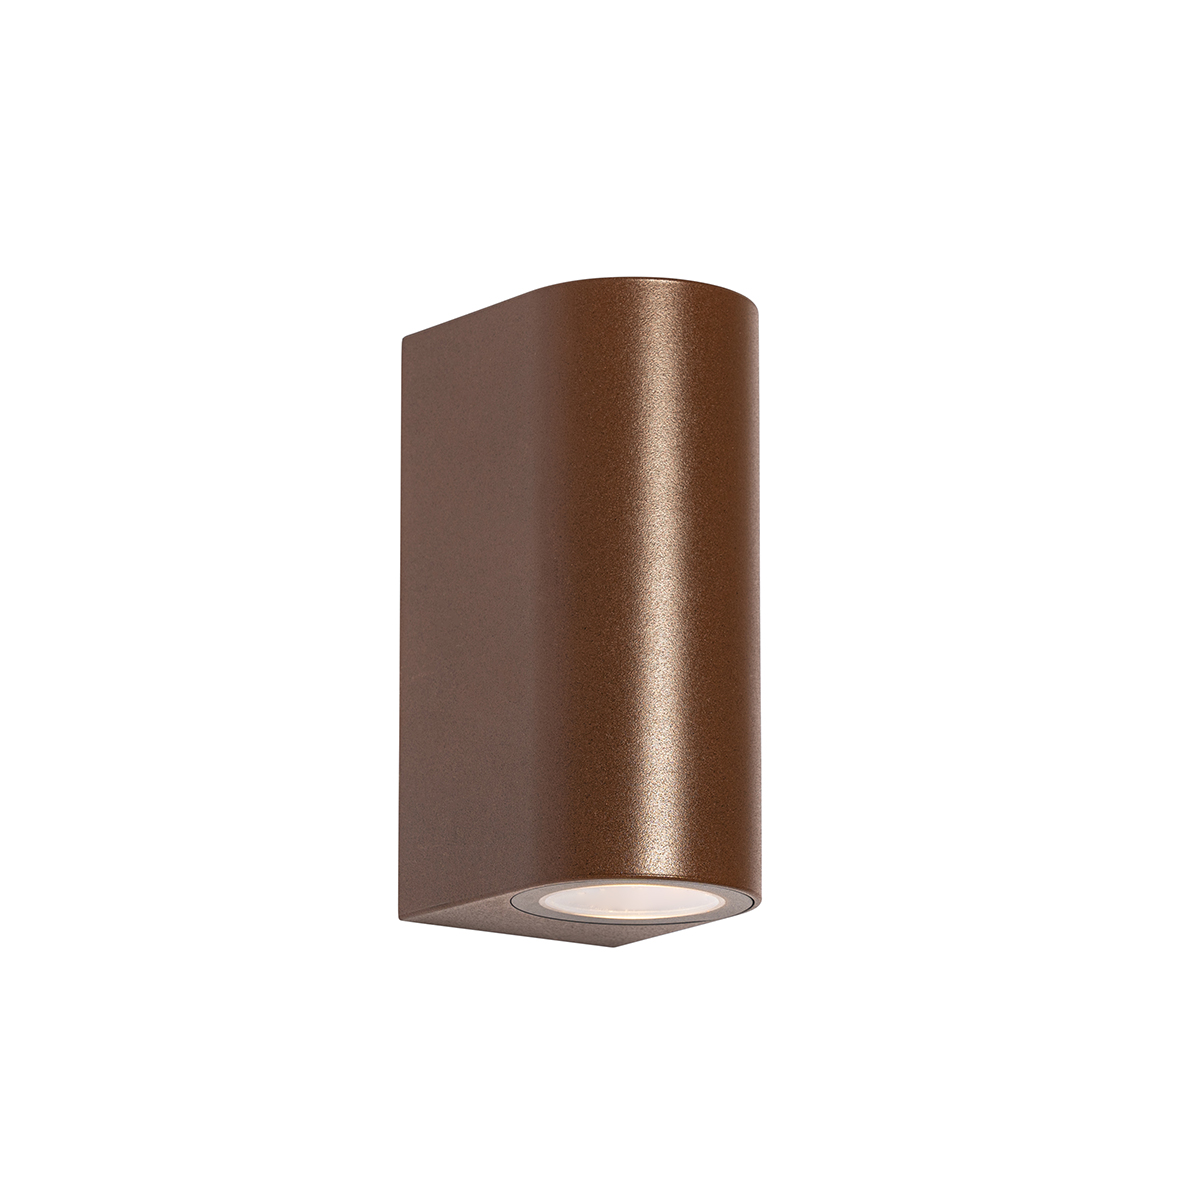 Kültéri fali lámpa rozsdabarna műanyag ovális 2 lámpás - Baleno